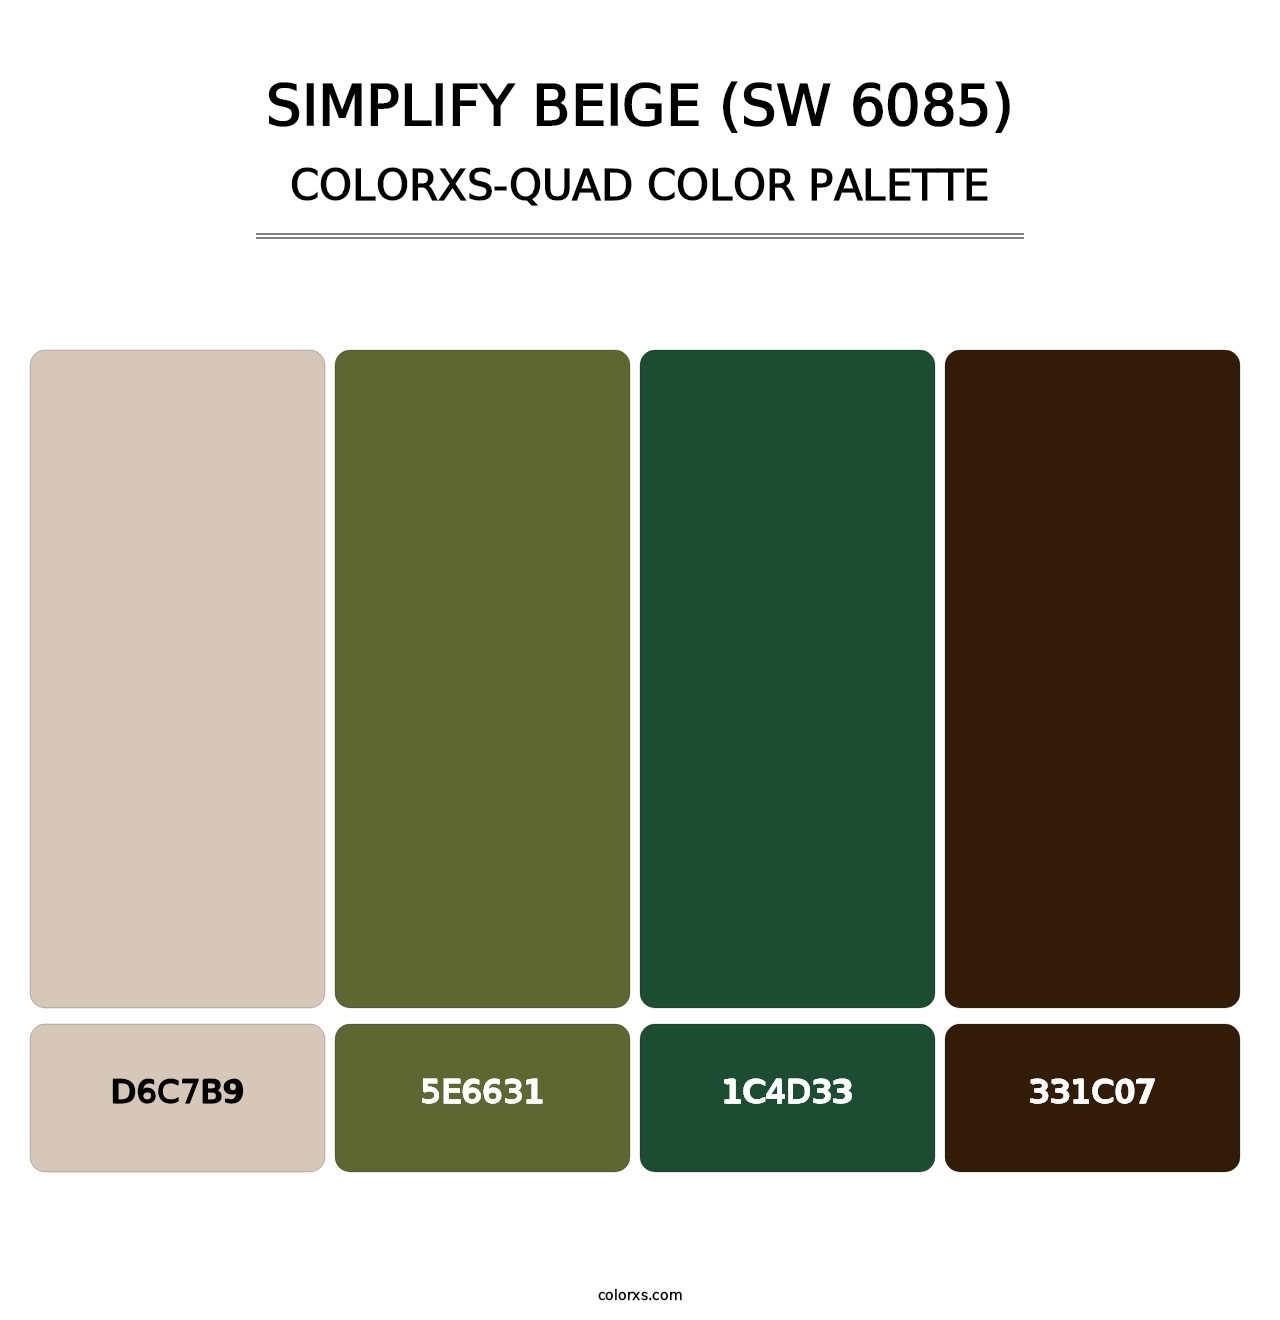 Simplify Beige (SW 6085) - Colorxs Quad Palette